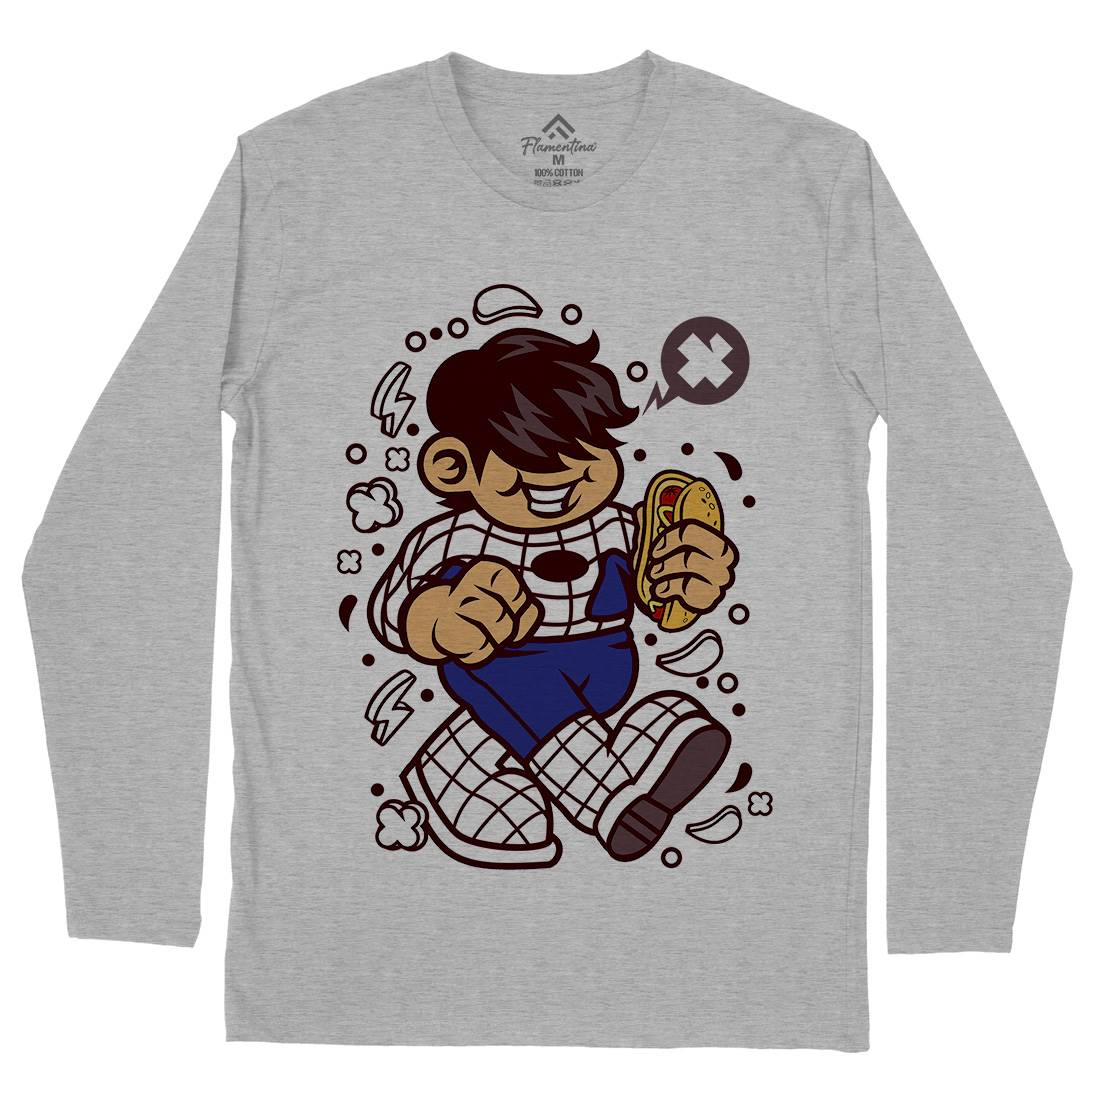 Superhero Spider Kid Mens Long Sleeve T-Shirt Geek C266